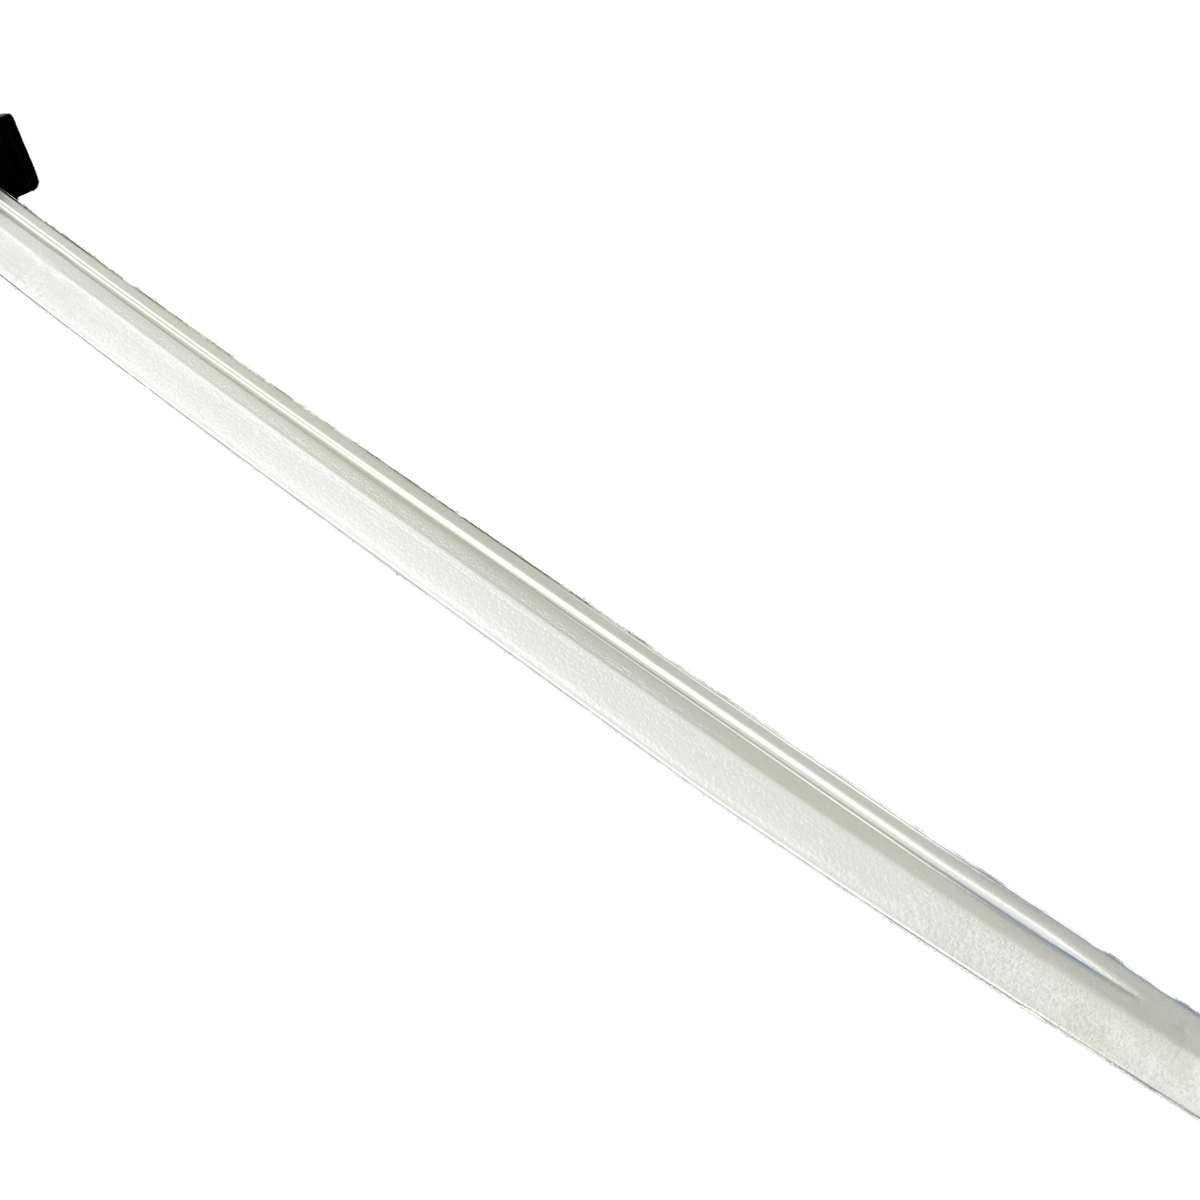 Épée de samouraï Katana, accessoire de film